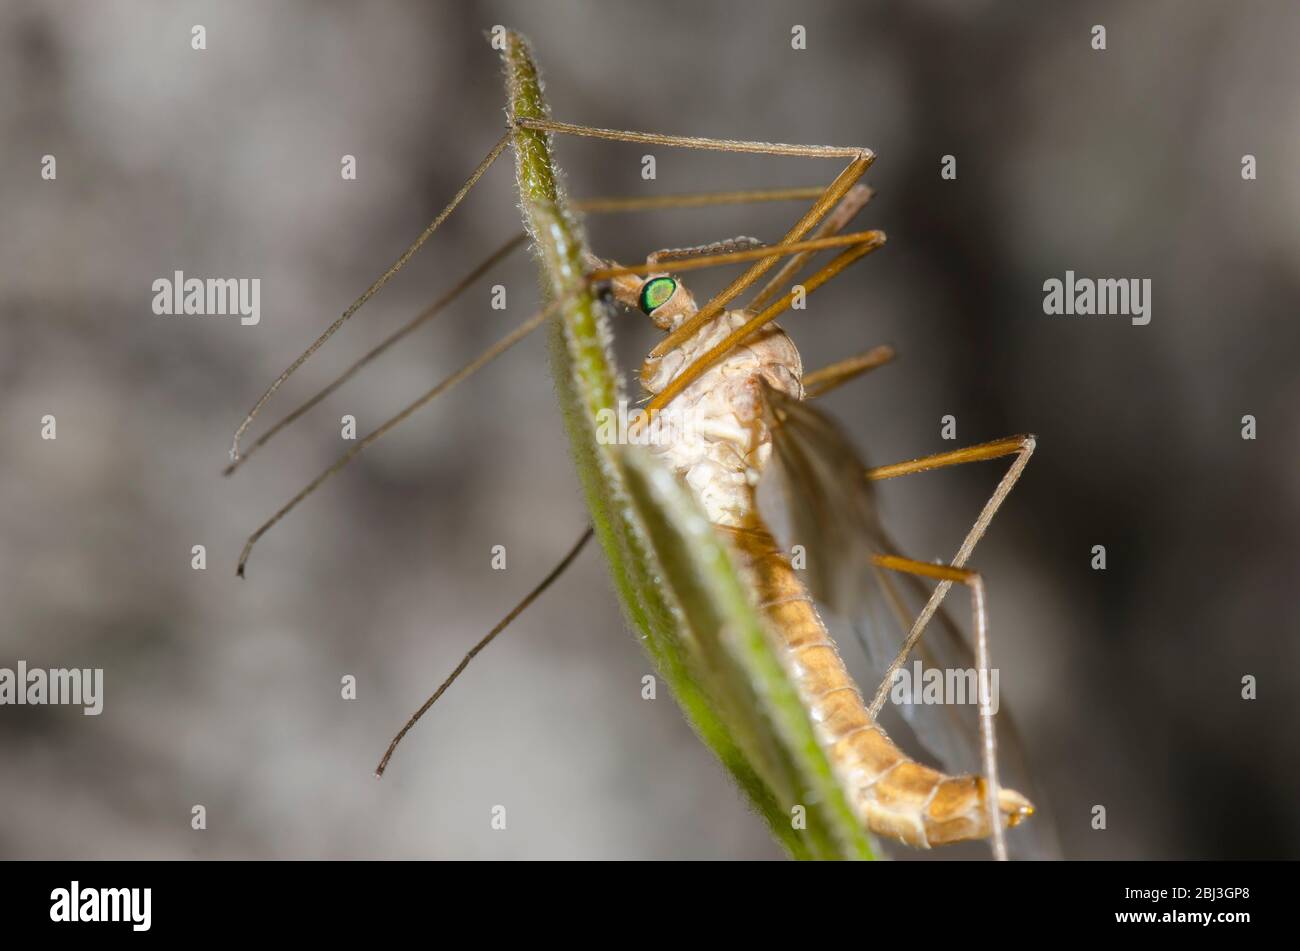 Large Crane Fly, Family Tipulidae Stock Photo